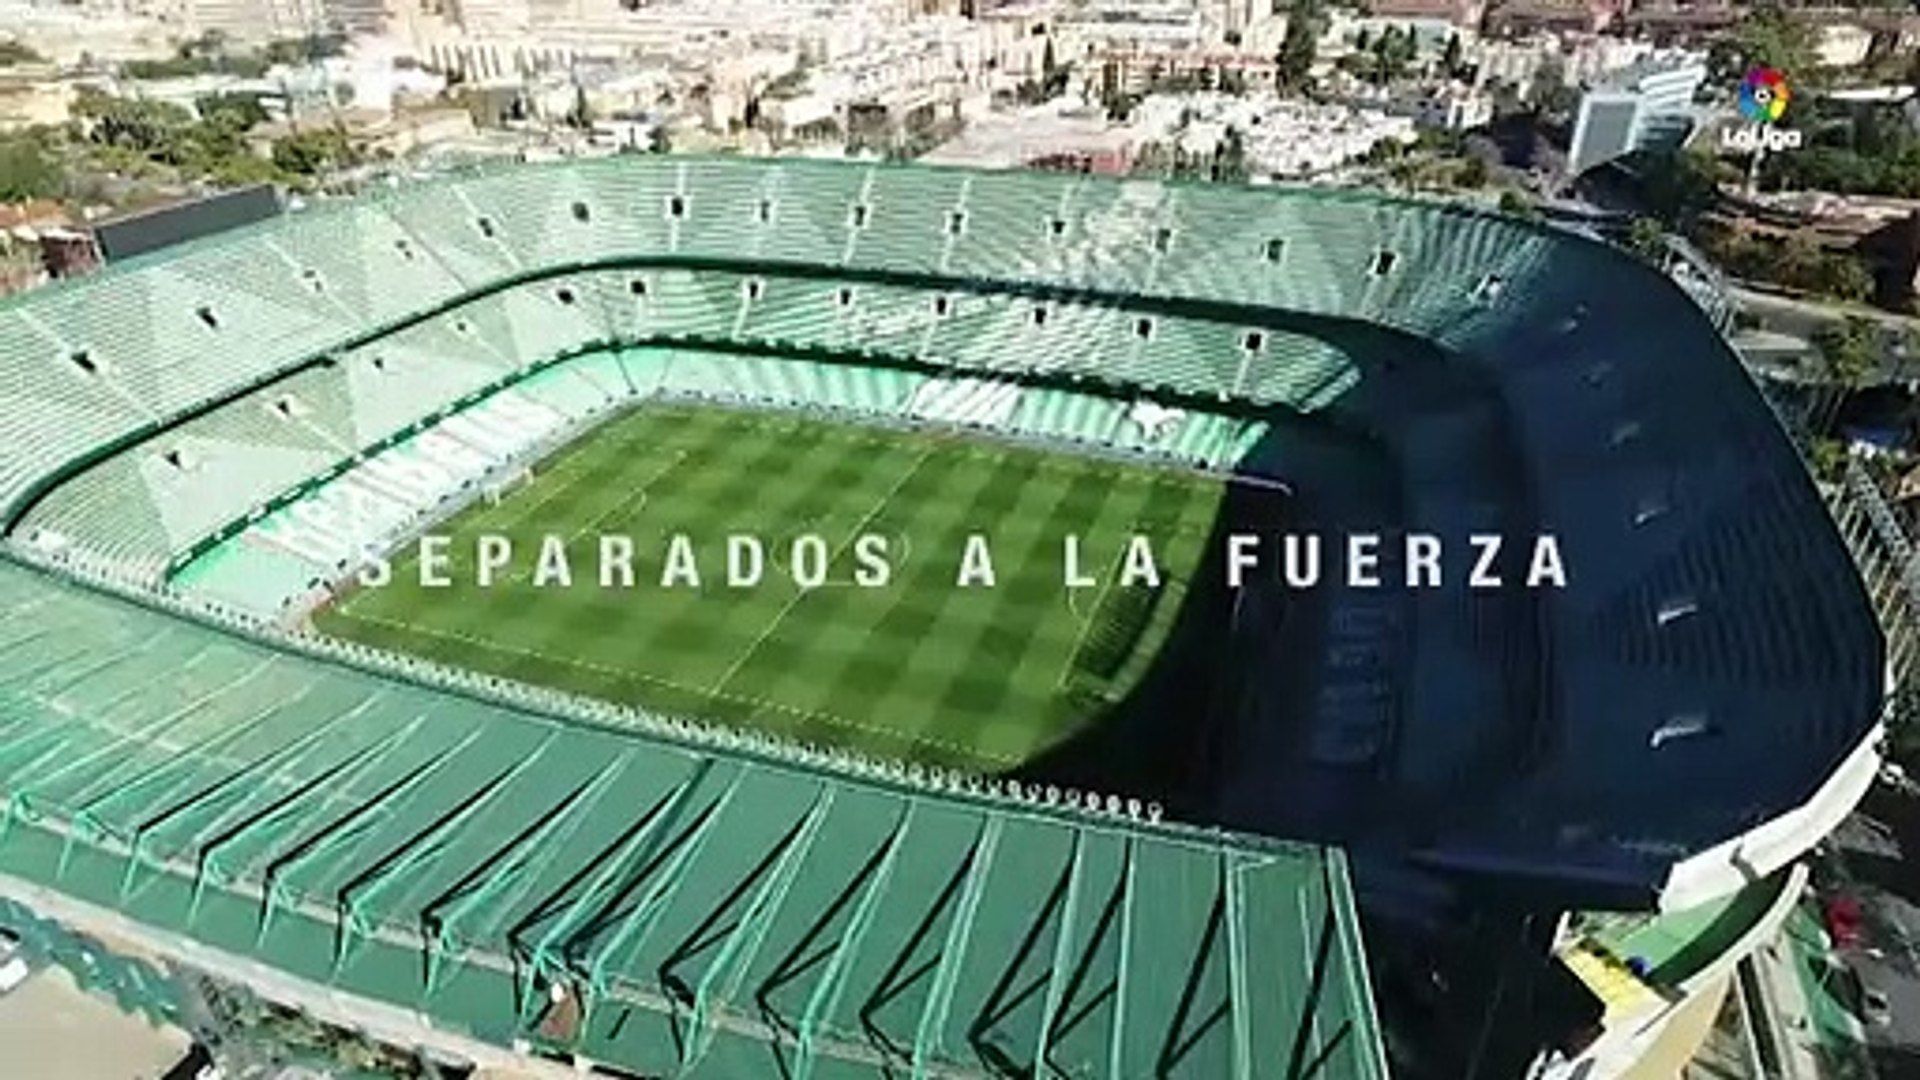 La afición del Real Betis, protagonista del spot de la campaña de abonados